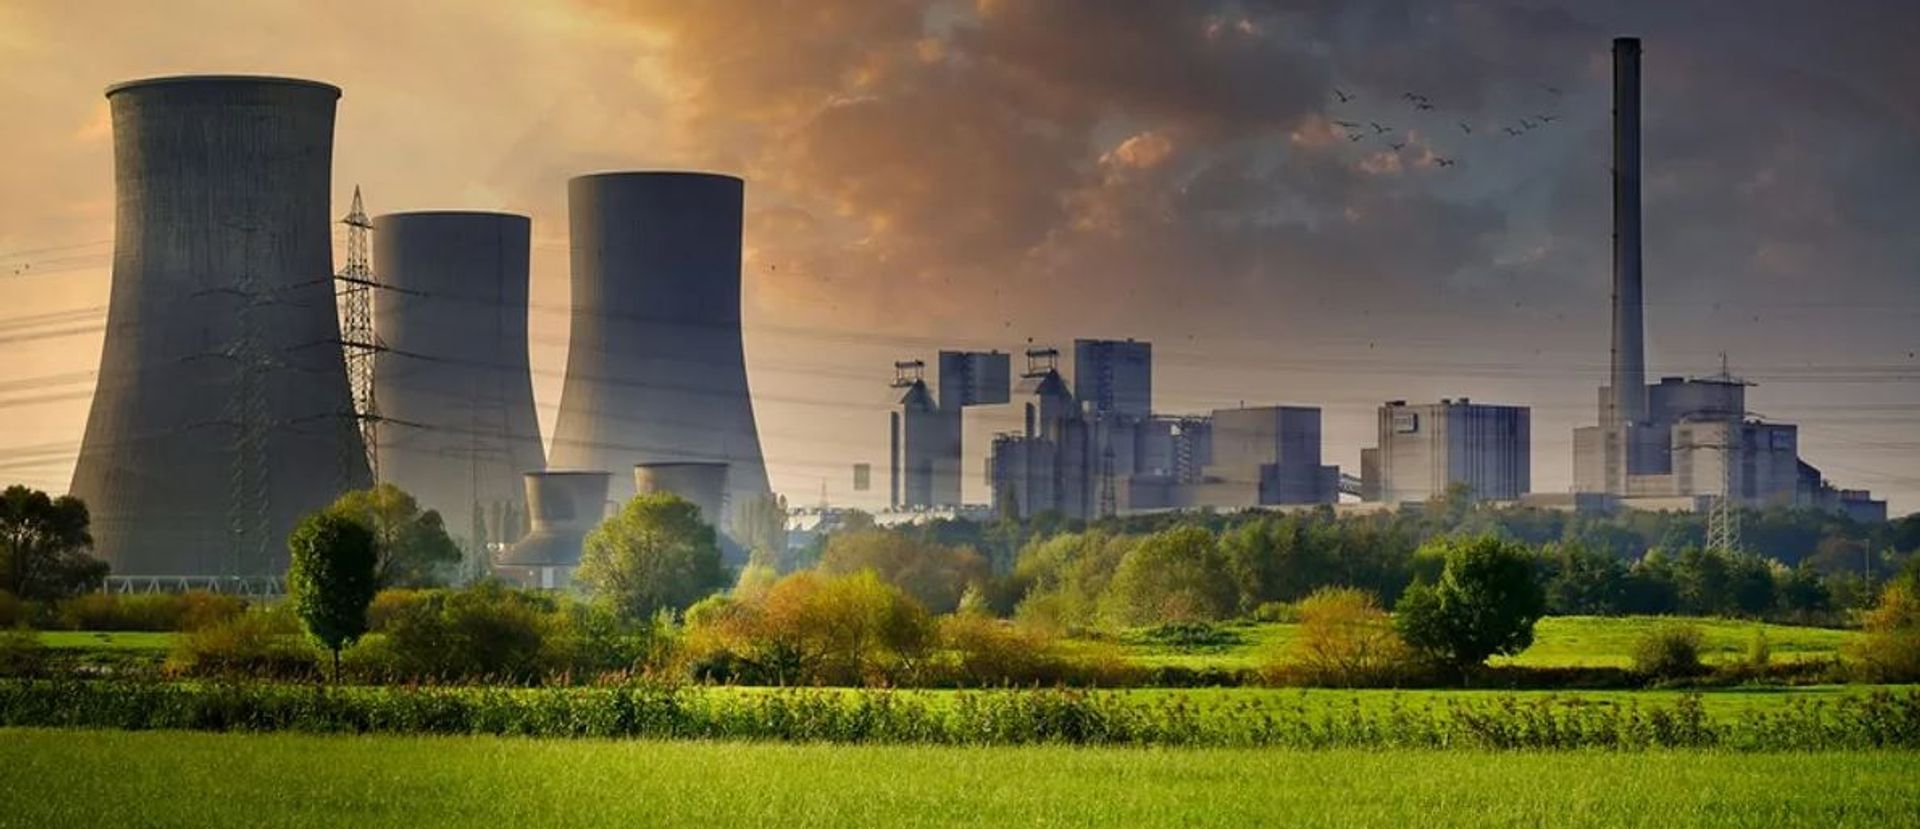 Polskie Elektrownie Jądrowe i Westinghouse podpisały umowę na prace przedprojektowe elektrowni jądrowej na Pomorzu